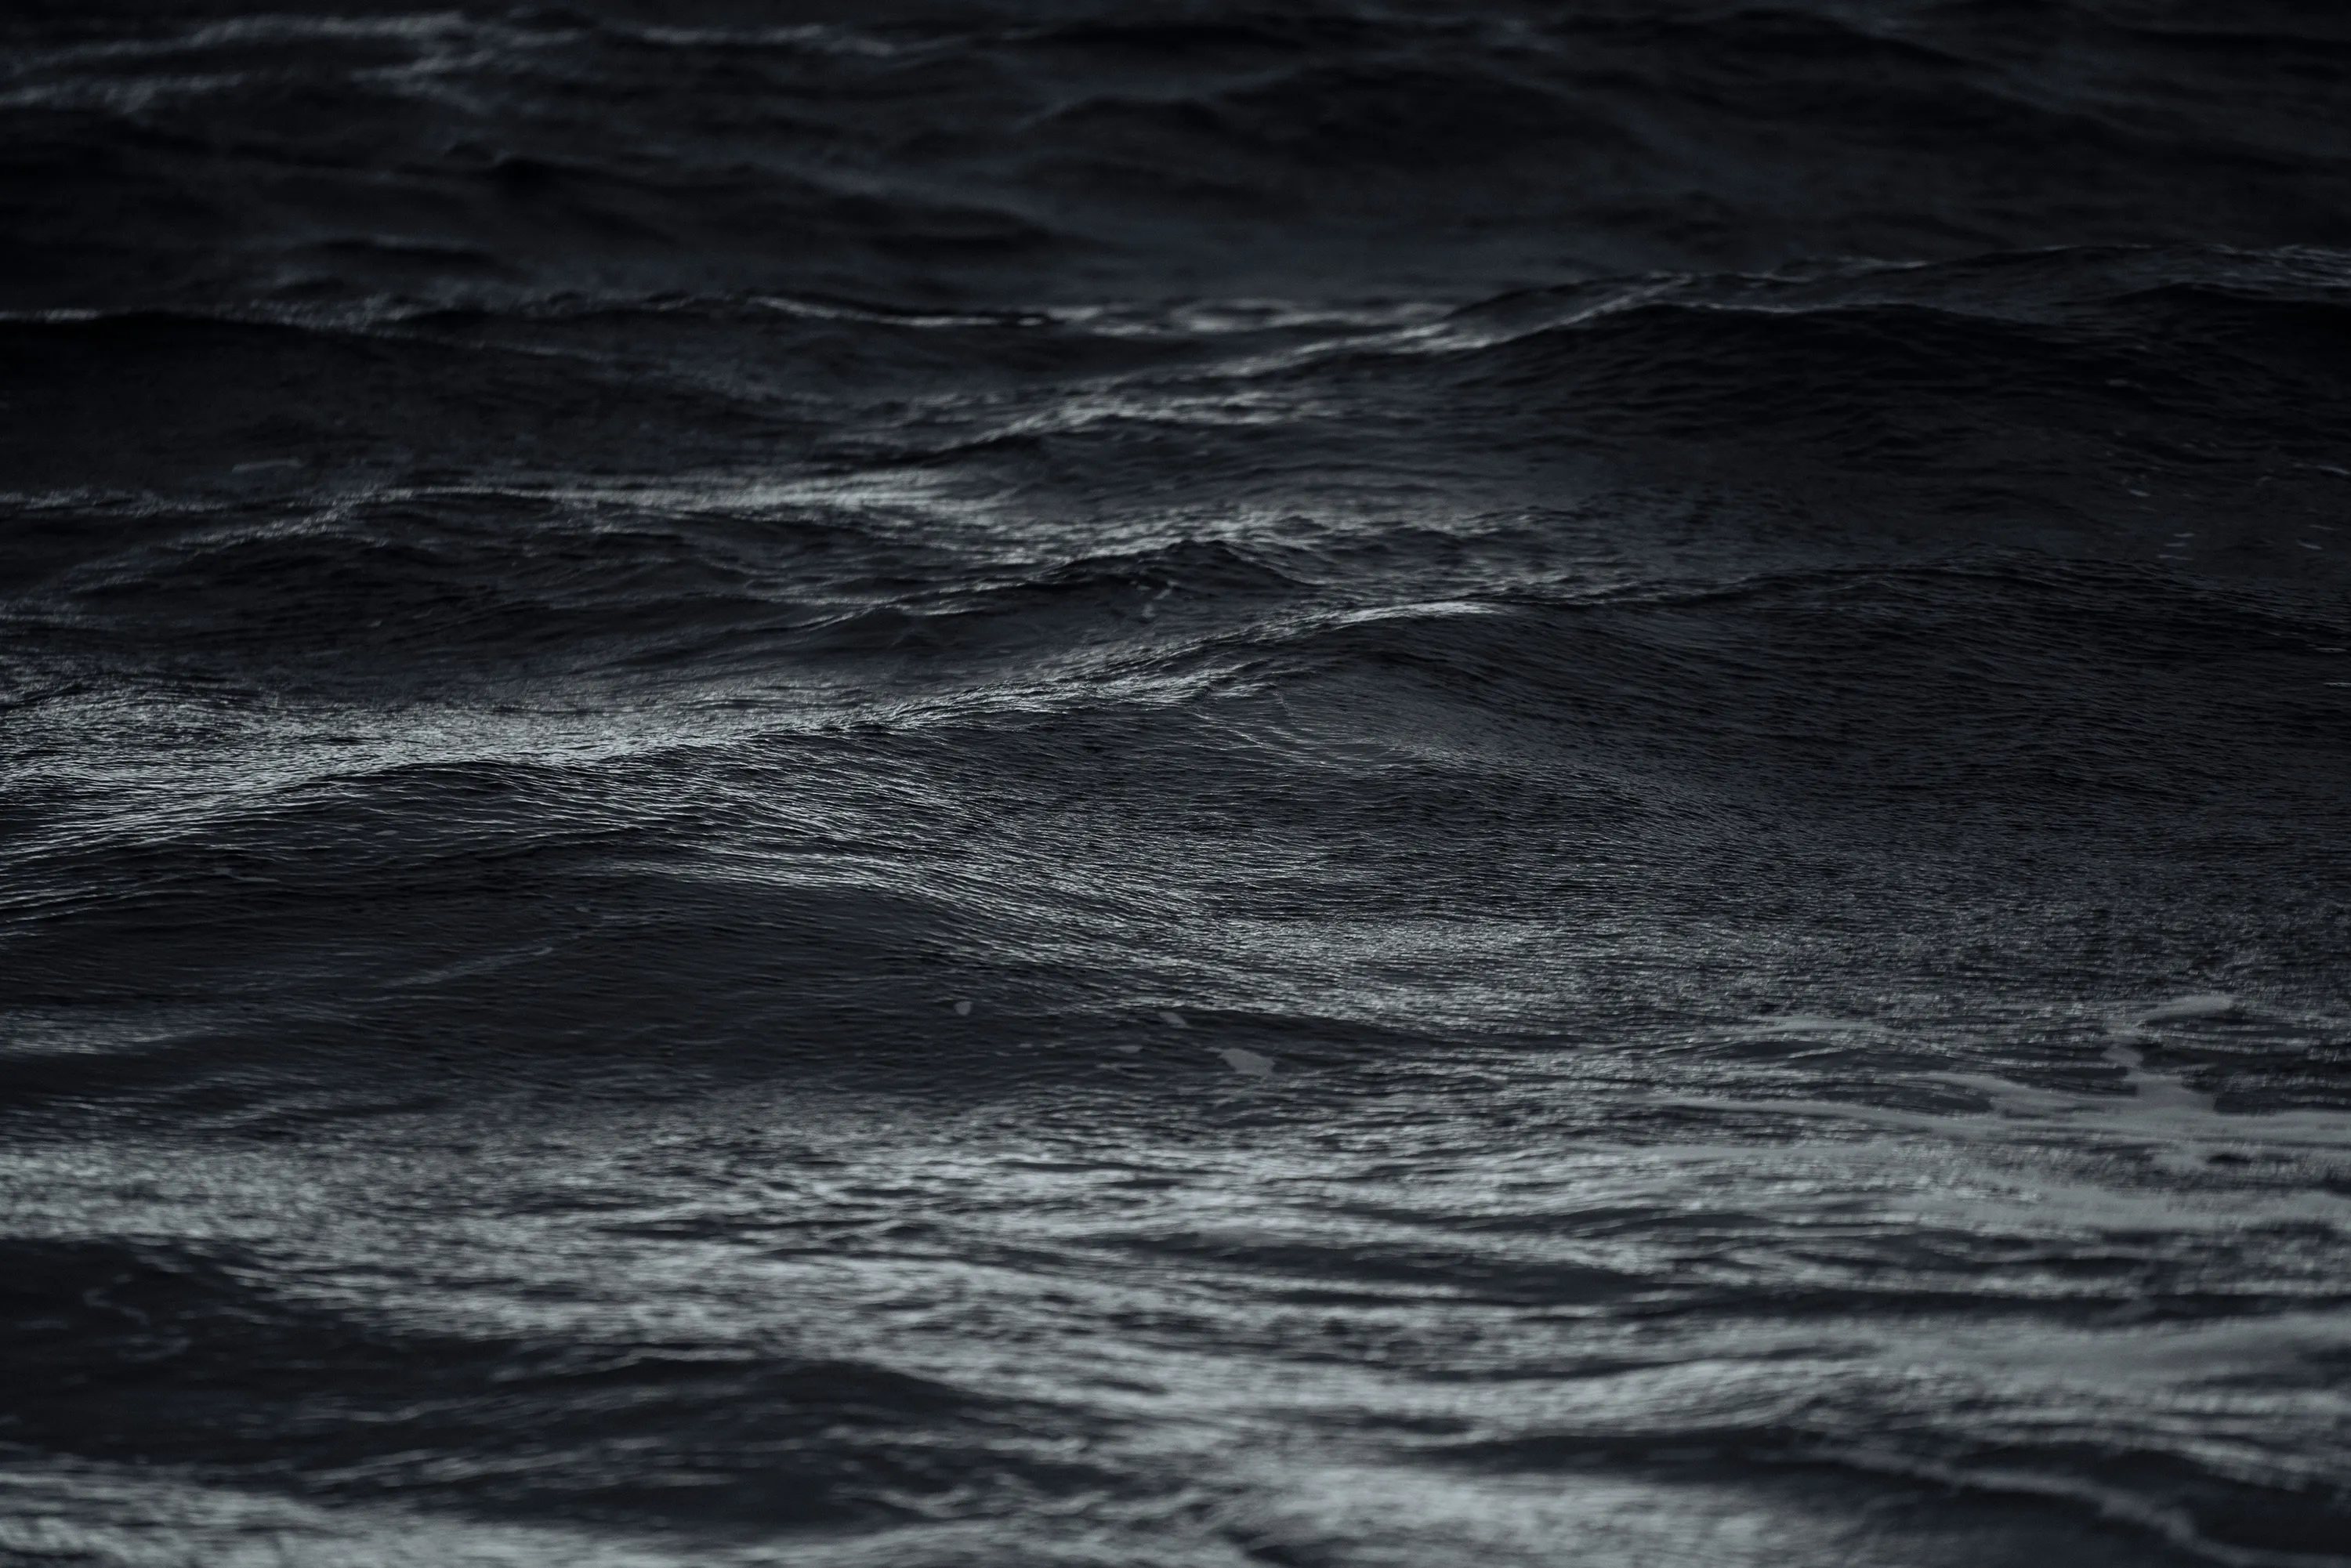 Waves disturb a dark body of water.